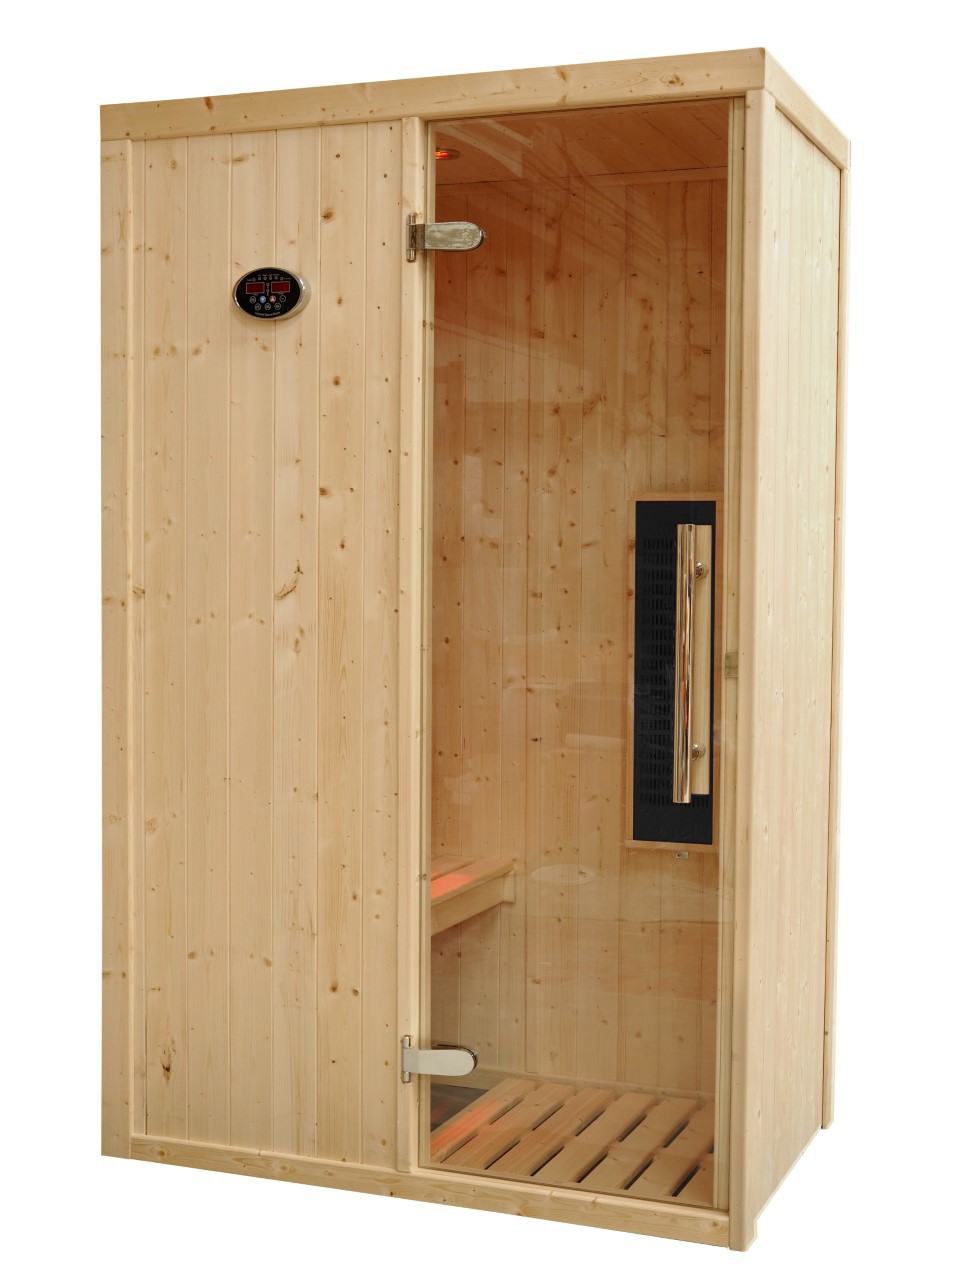 Cabina sauna de infravermelhos para 1 pessoa - IR1020